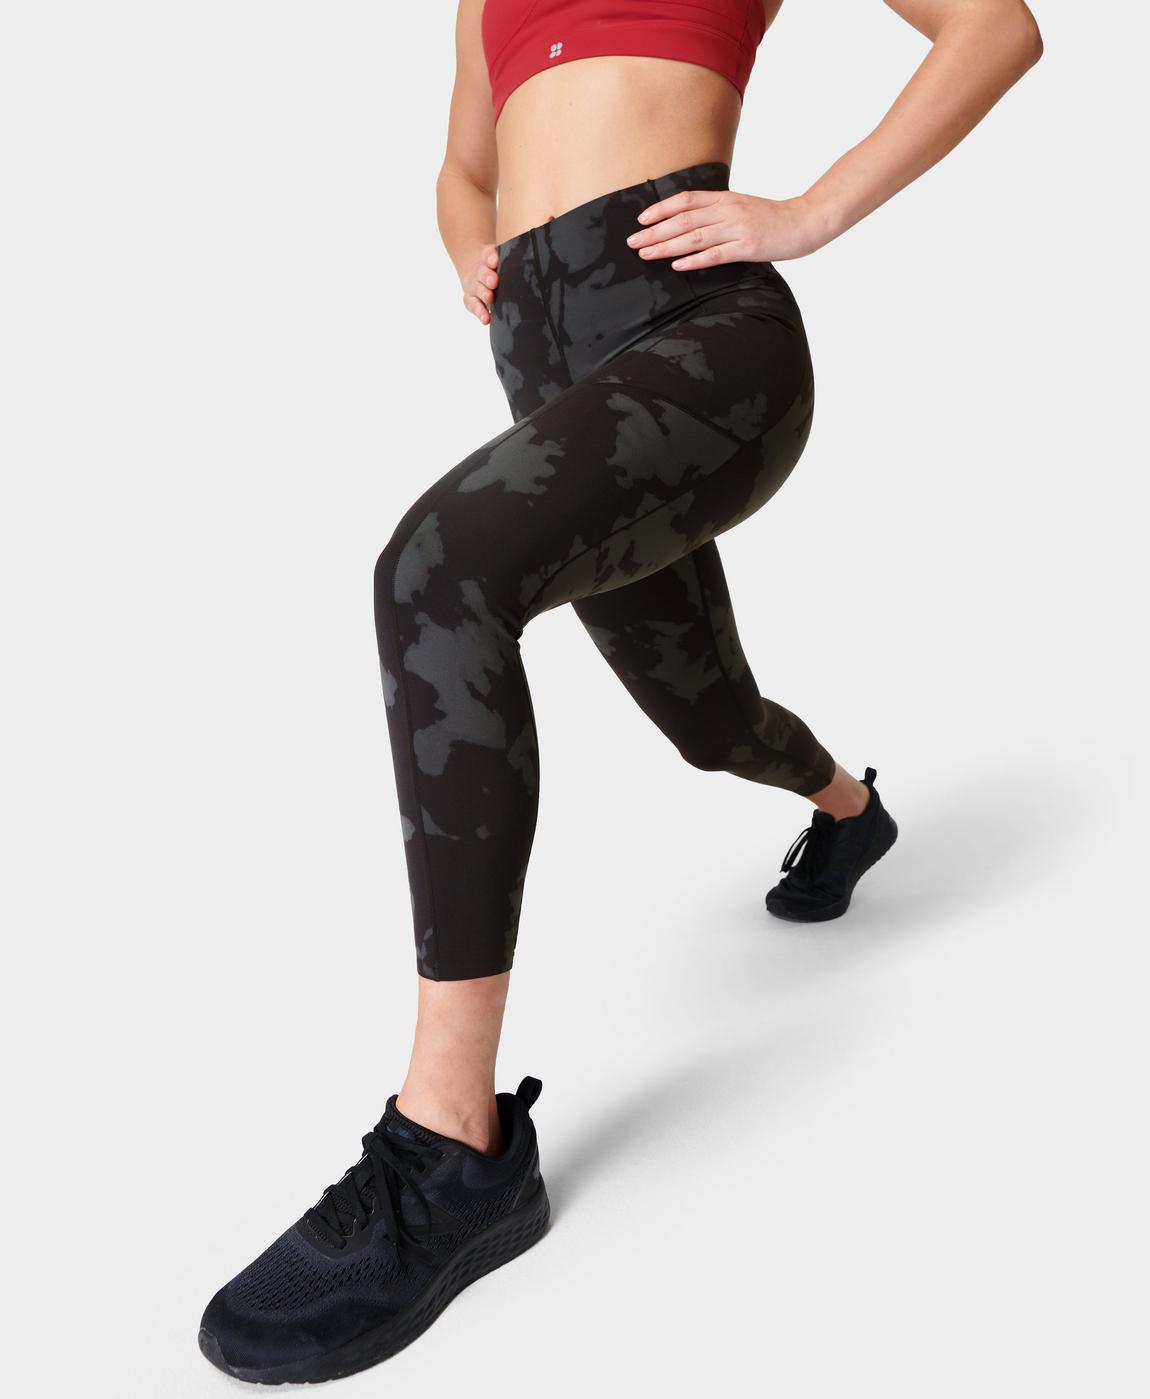 Power UltraSculpt High-Waisted 7/8 Gym Leggings - Black Fade Print, Women's Leggings